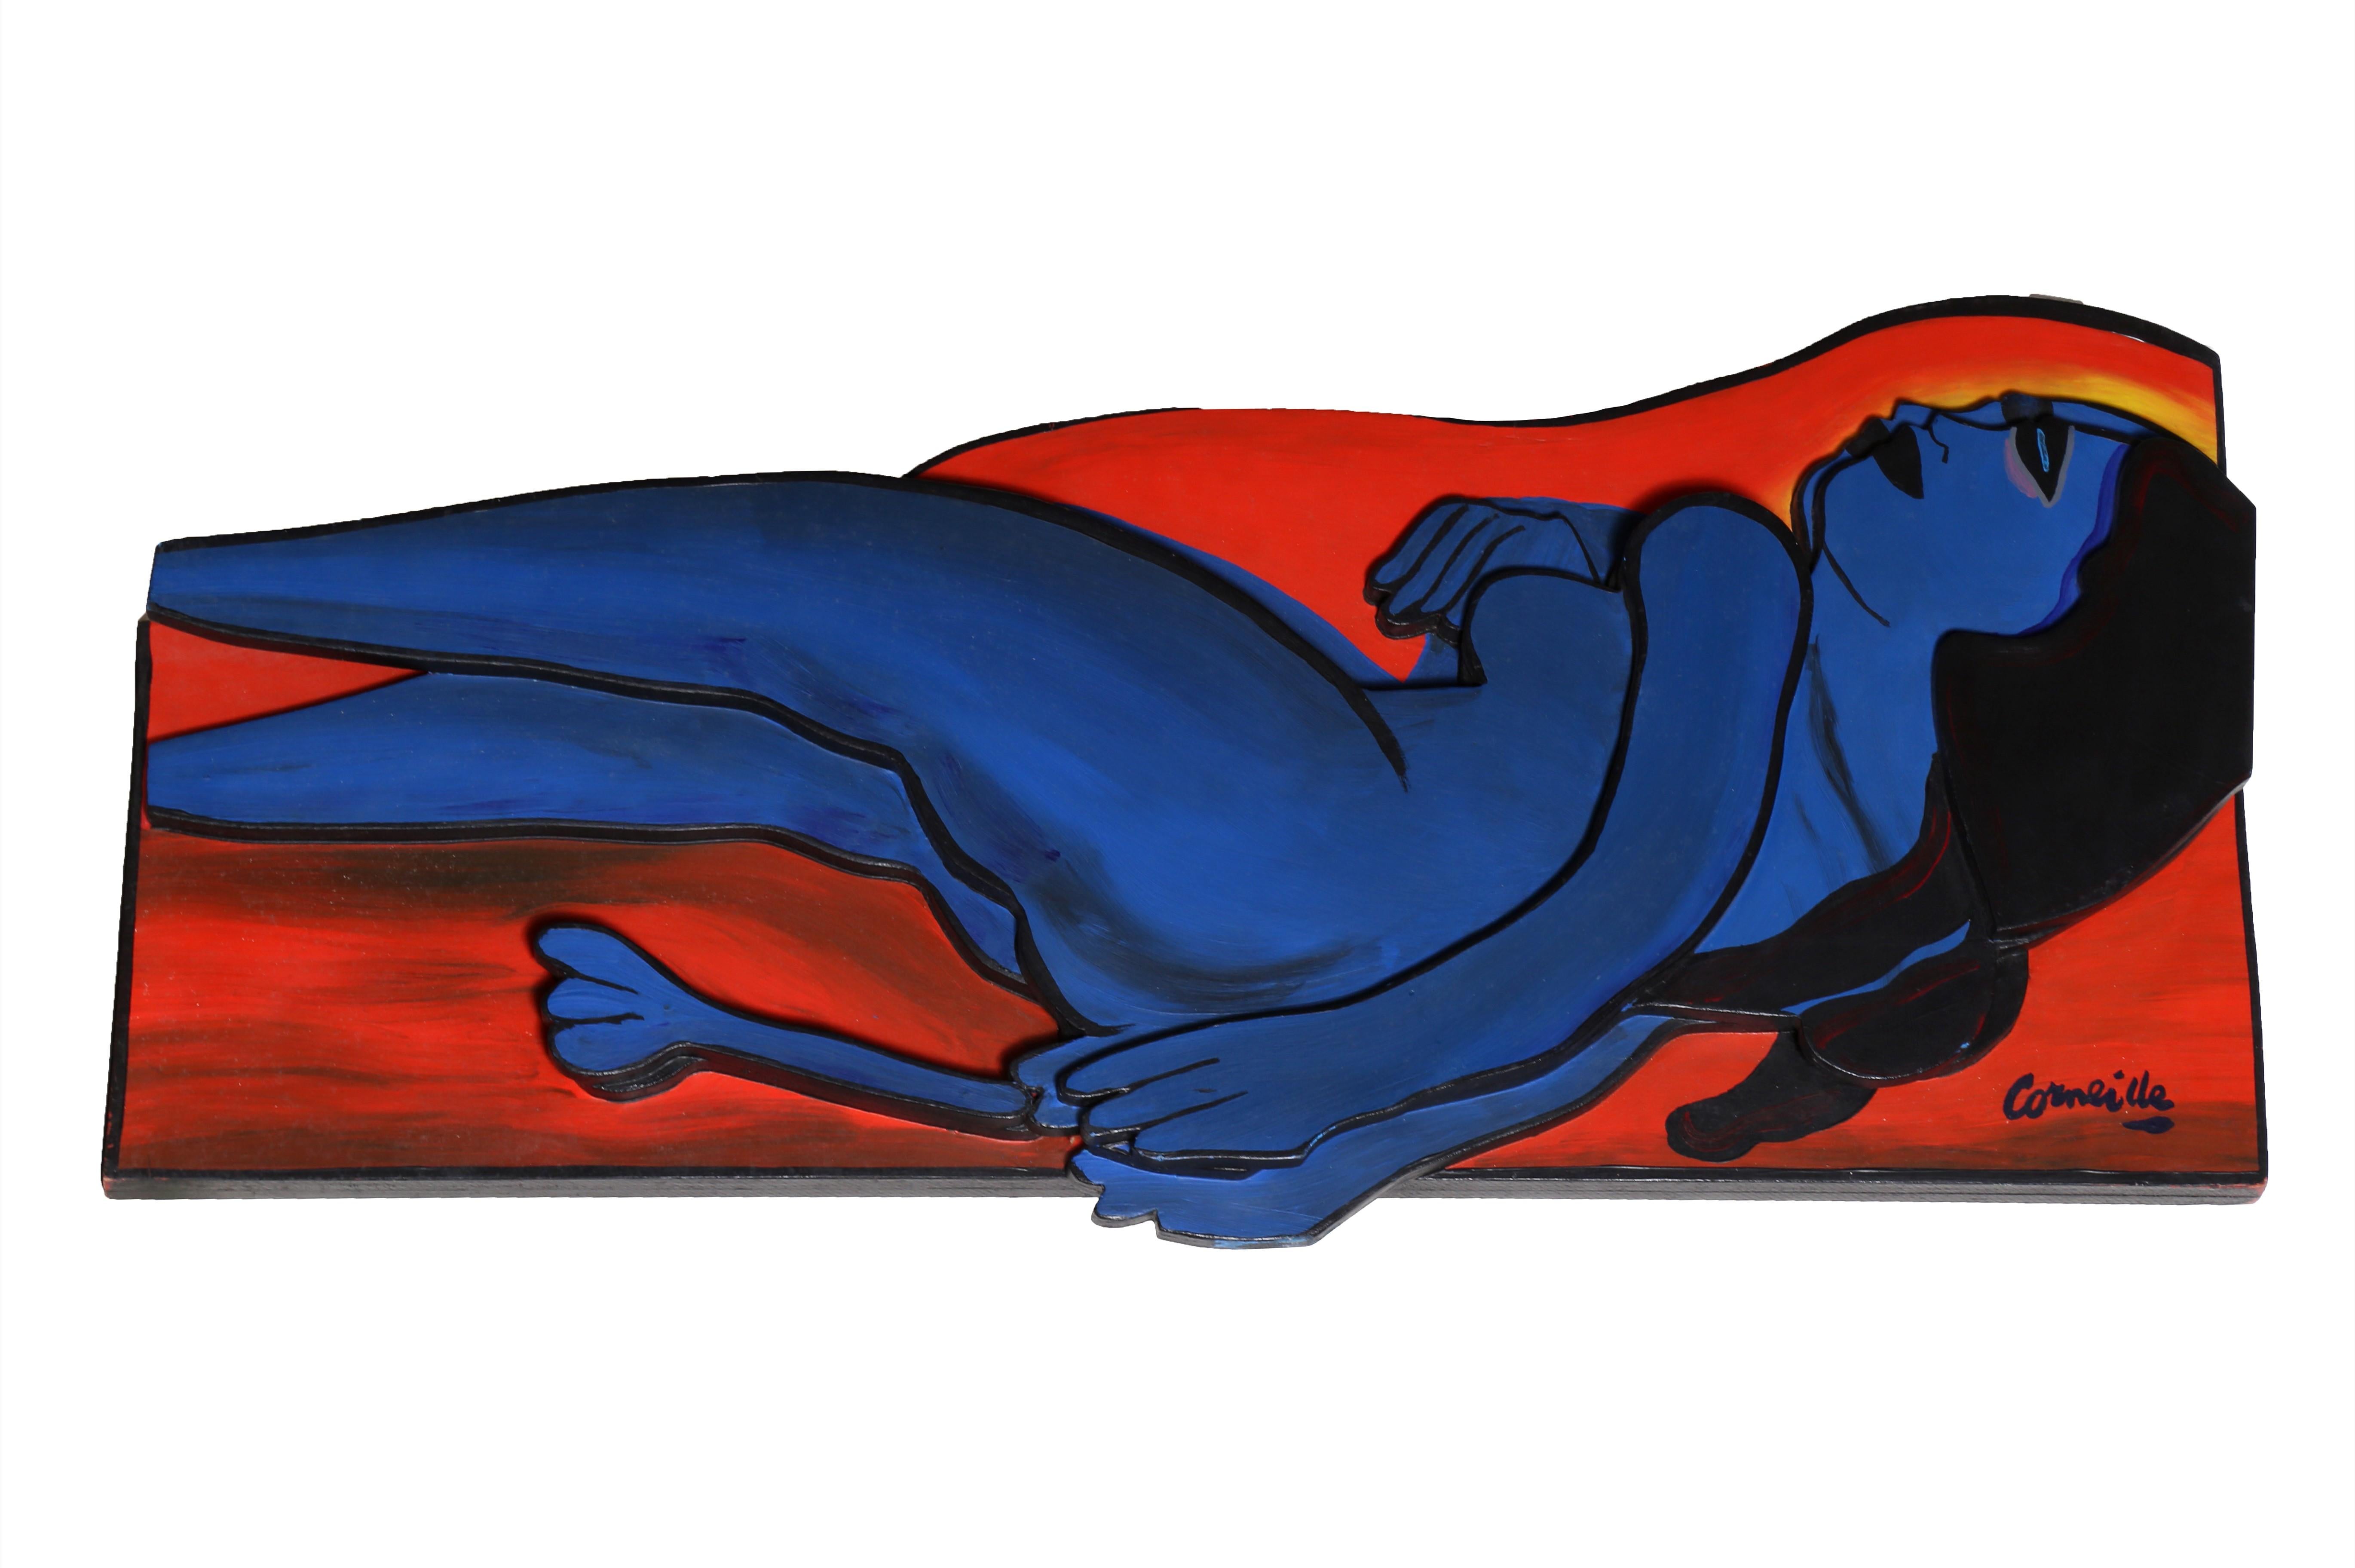 Femme en Bleu, Wand-/Table-Skulptur von Corneille